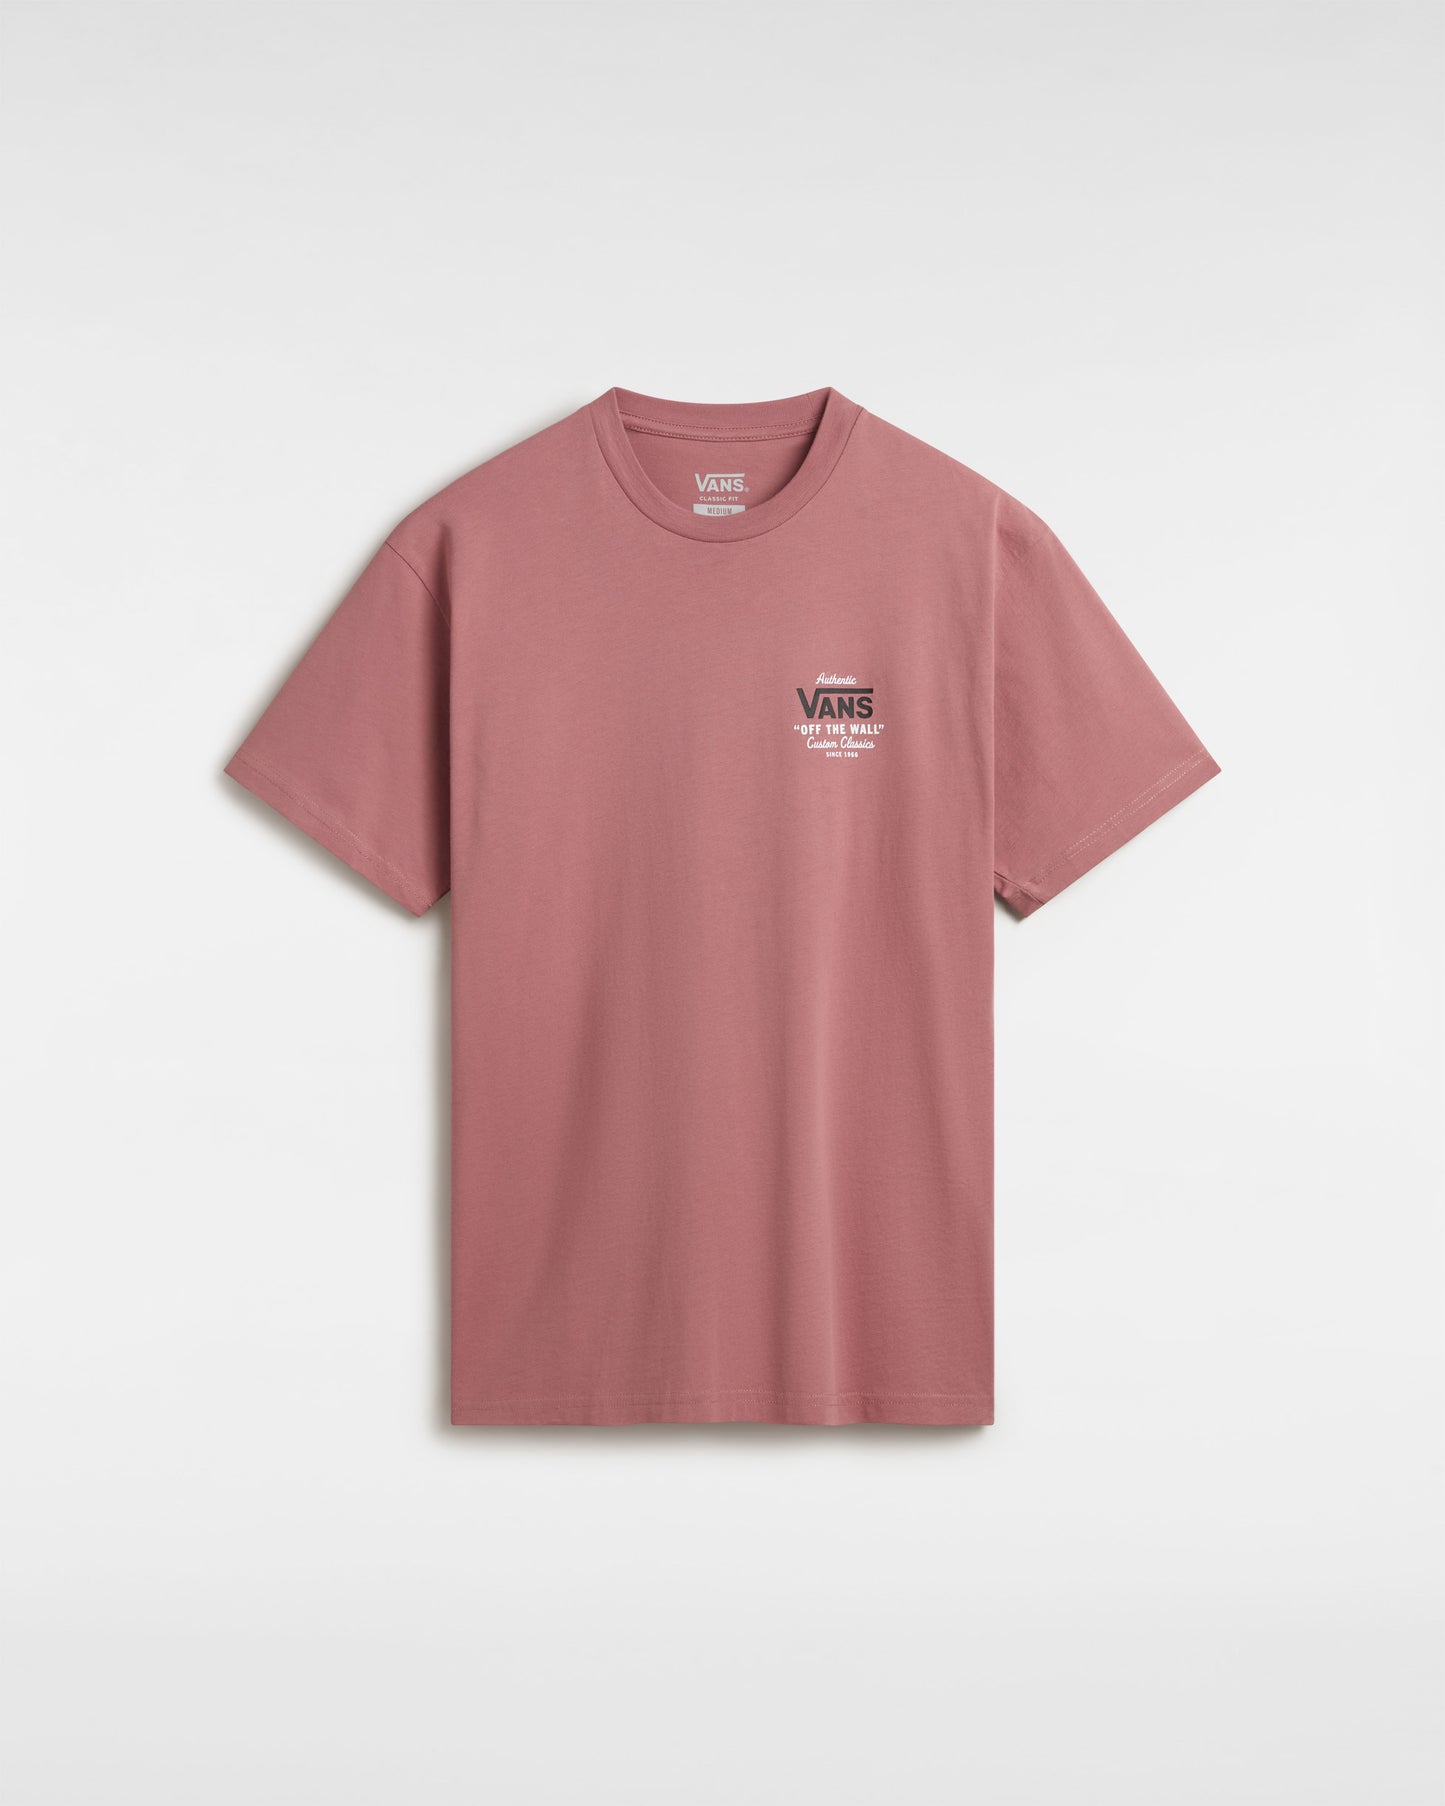 חולצת טי שרט - Vans T shirt